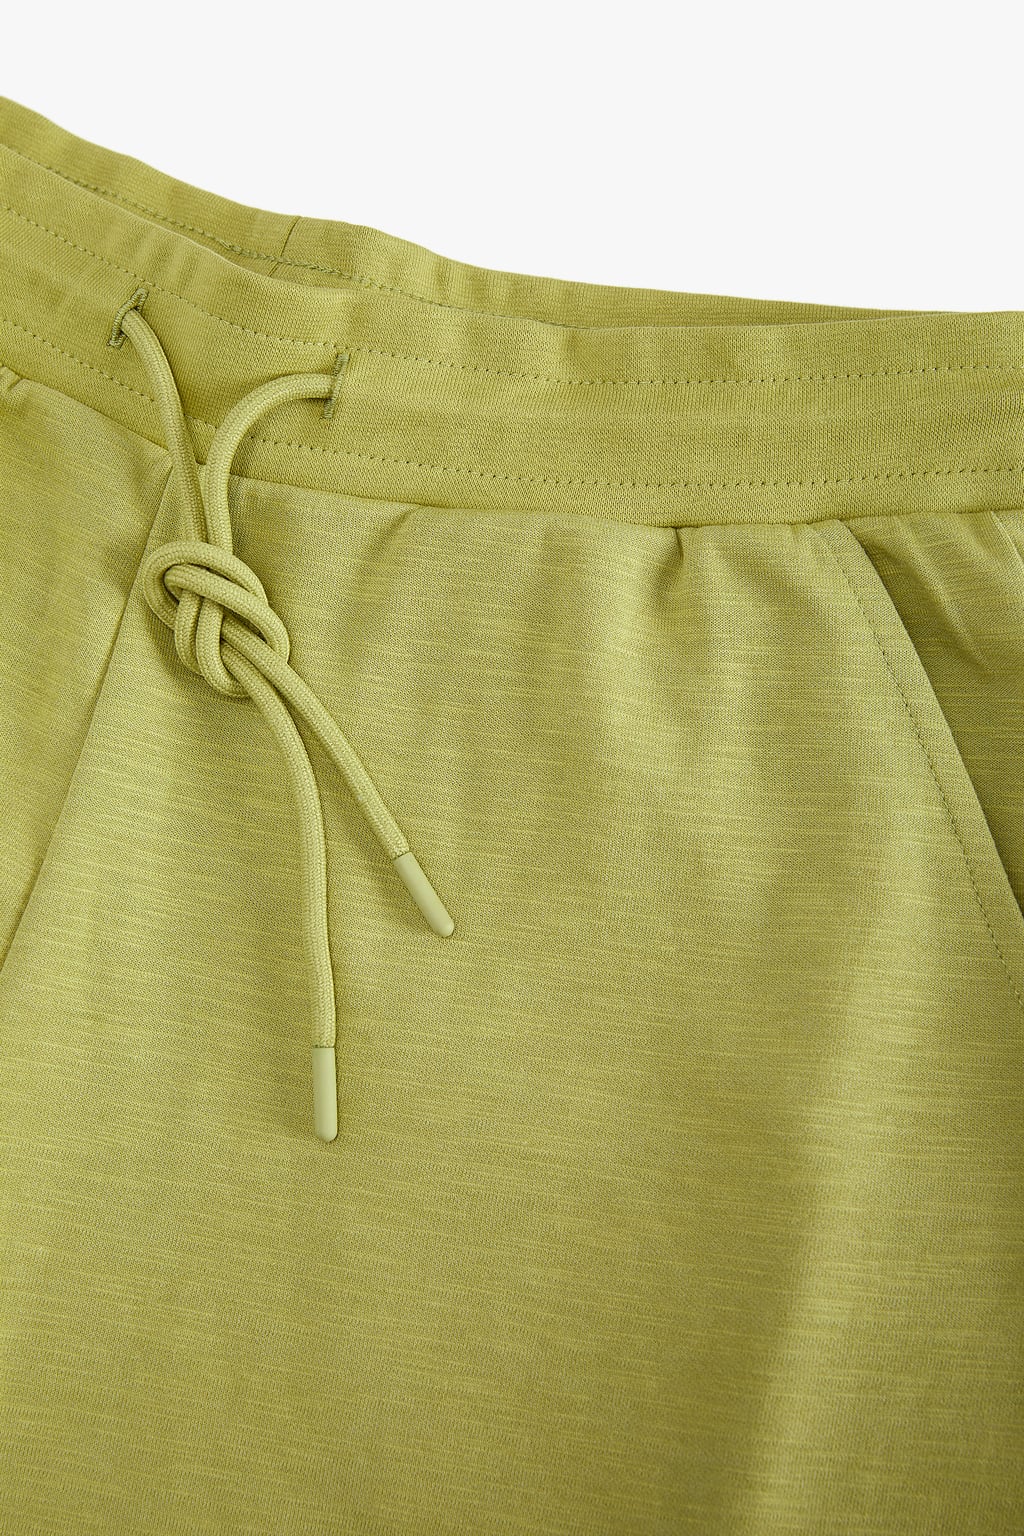 ZaraMan Knitted Jogg Cotton Trouser 5372/302/500